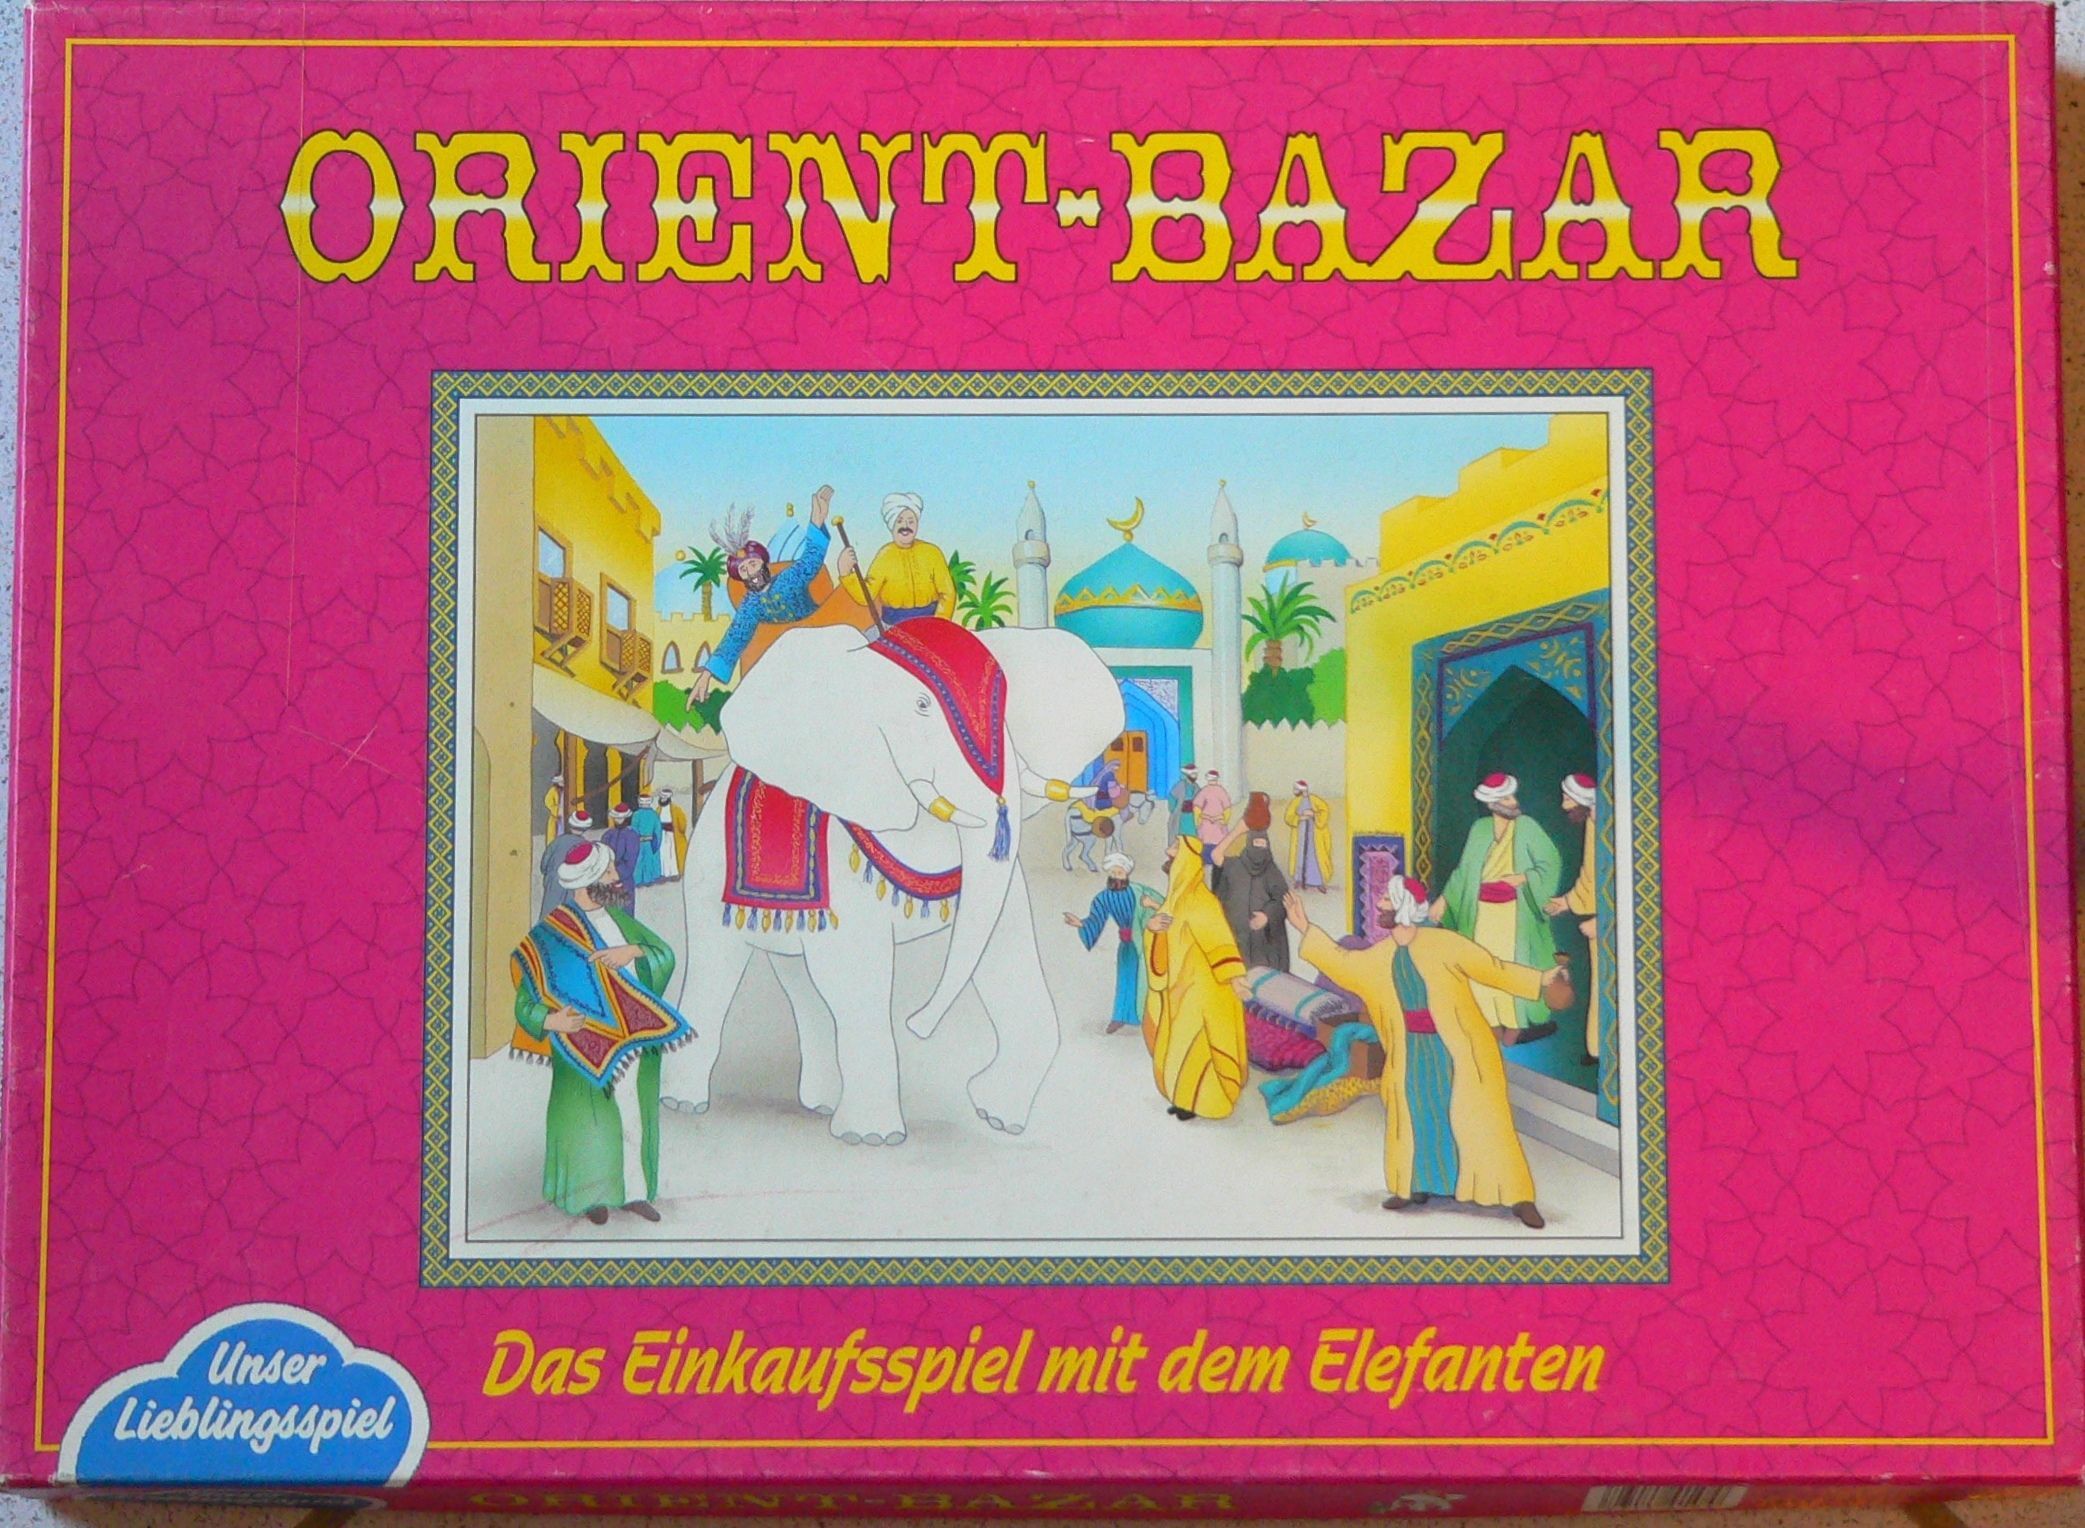 Orient-Bazar